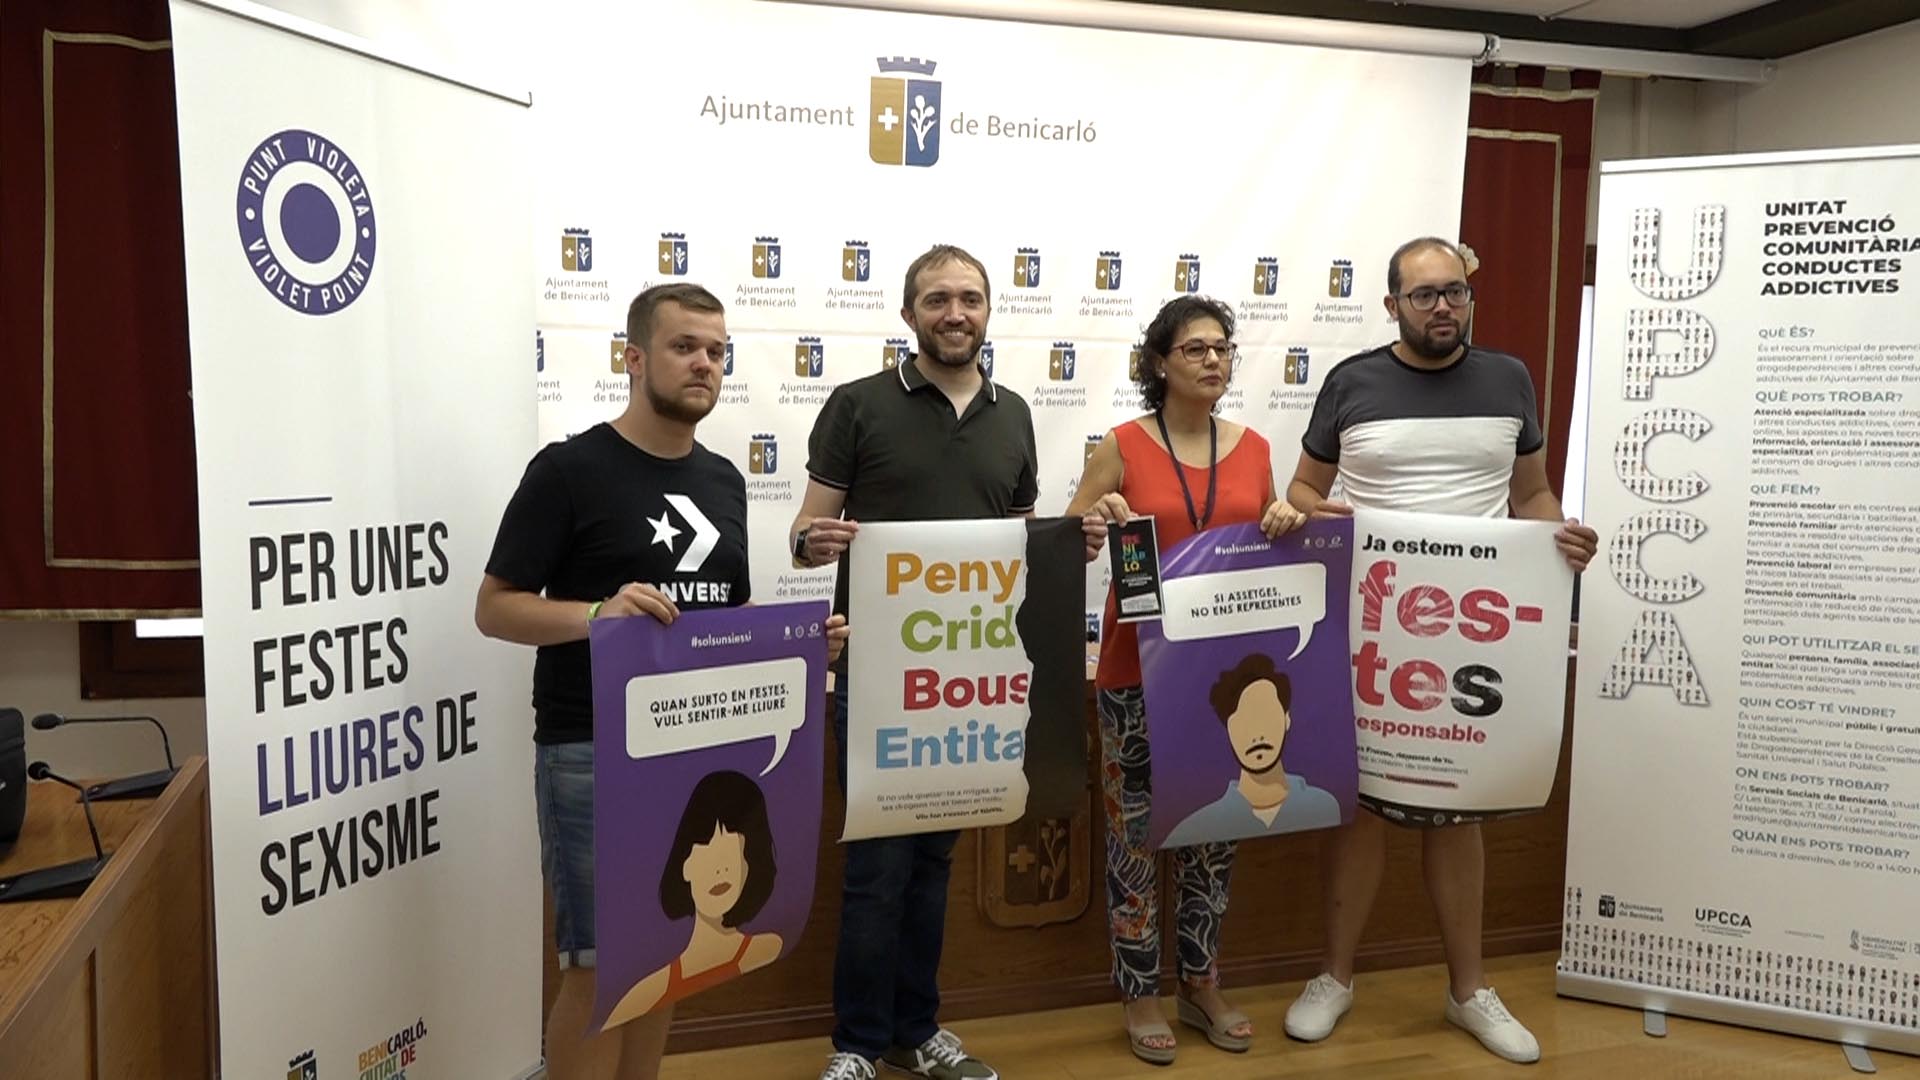 Benicarló fomentarà unes Festes Patronals lliures d'agressions sexistes i amb un consum responsable